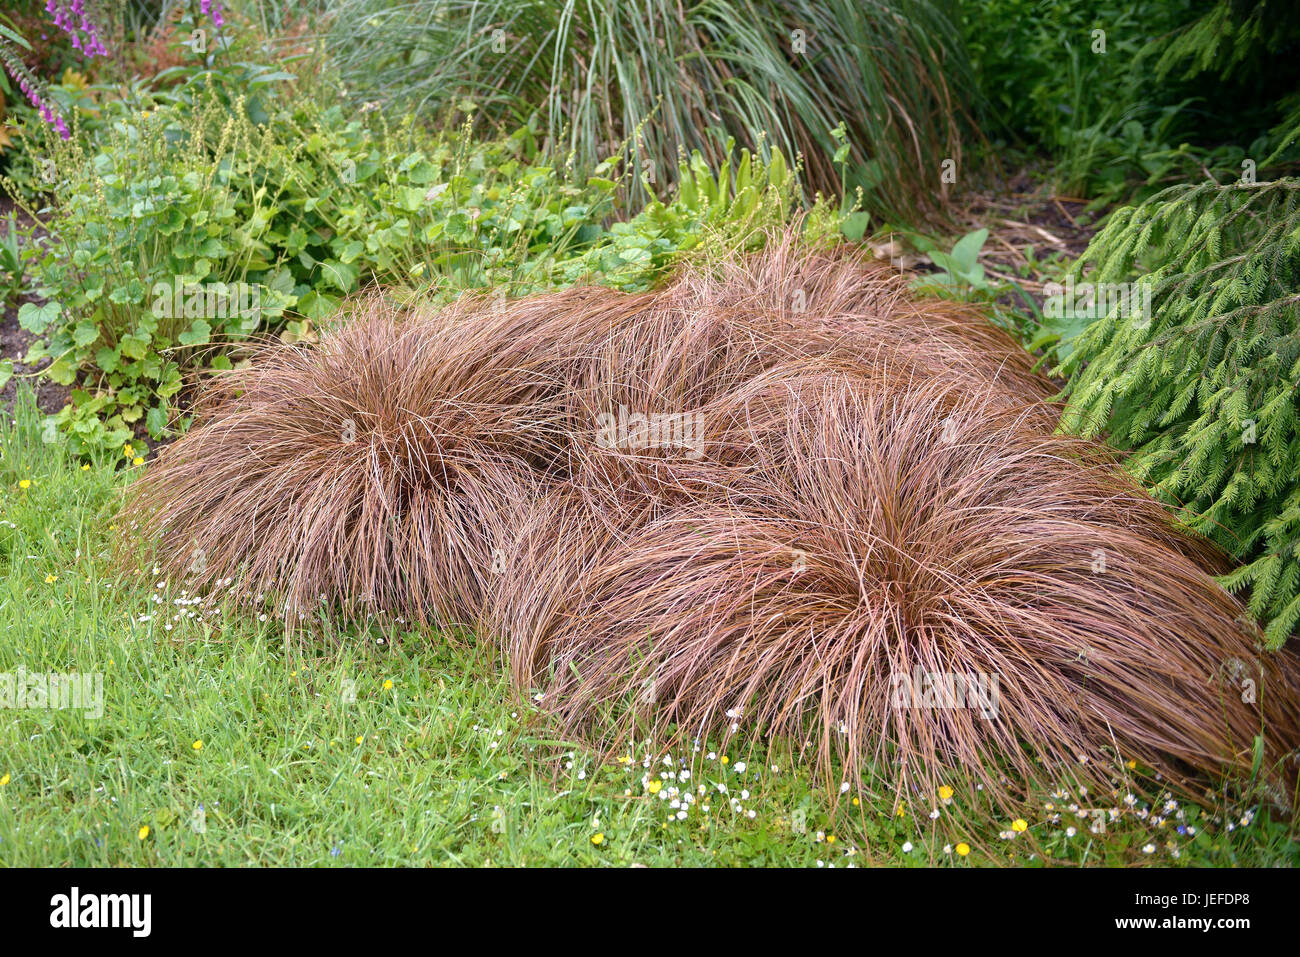 Neuseeland-Segge, Carex comans bronze form , Neuseeland-Segge (Carex comans 'Bronze Form') Stock Photo